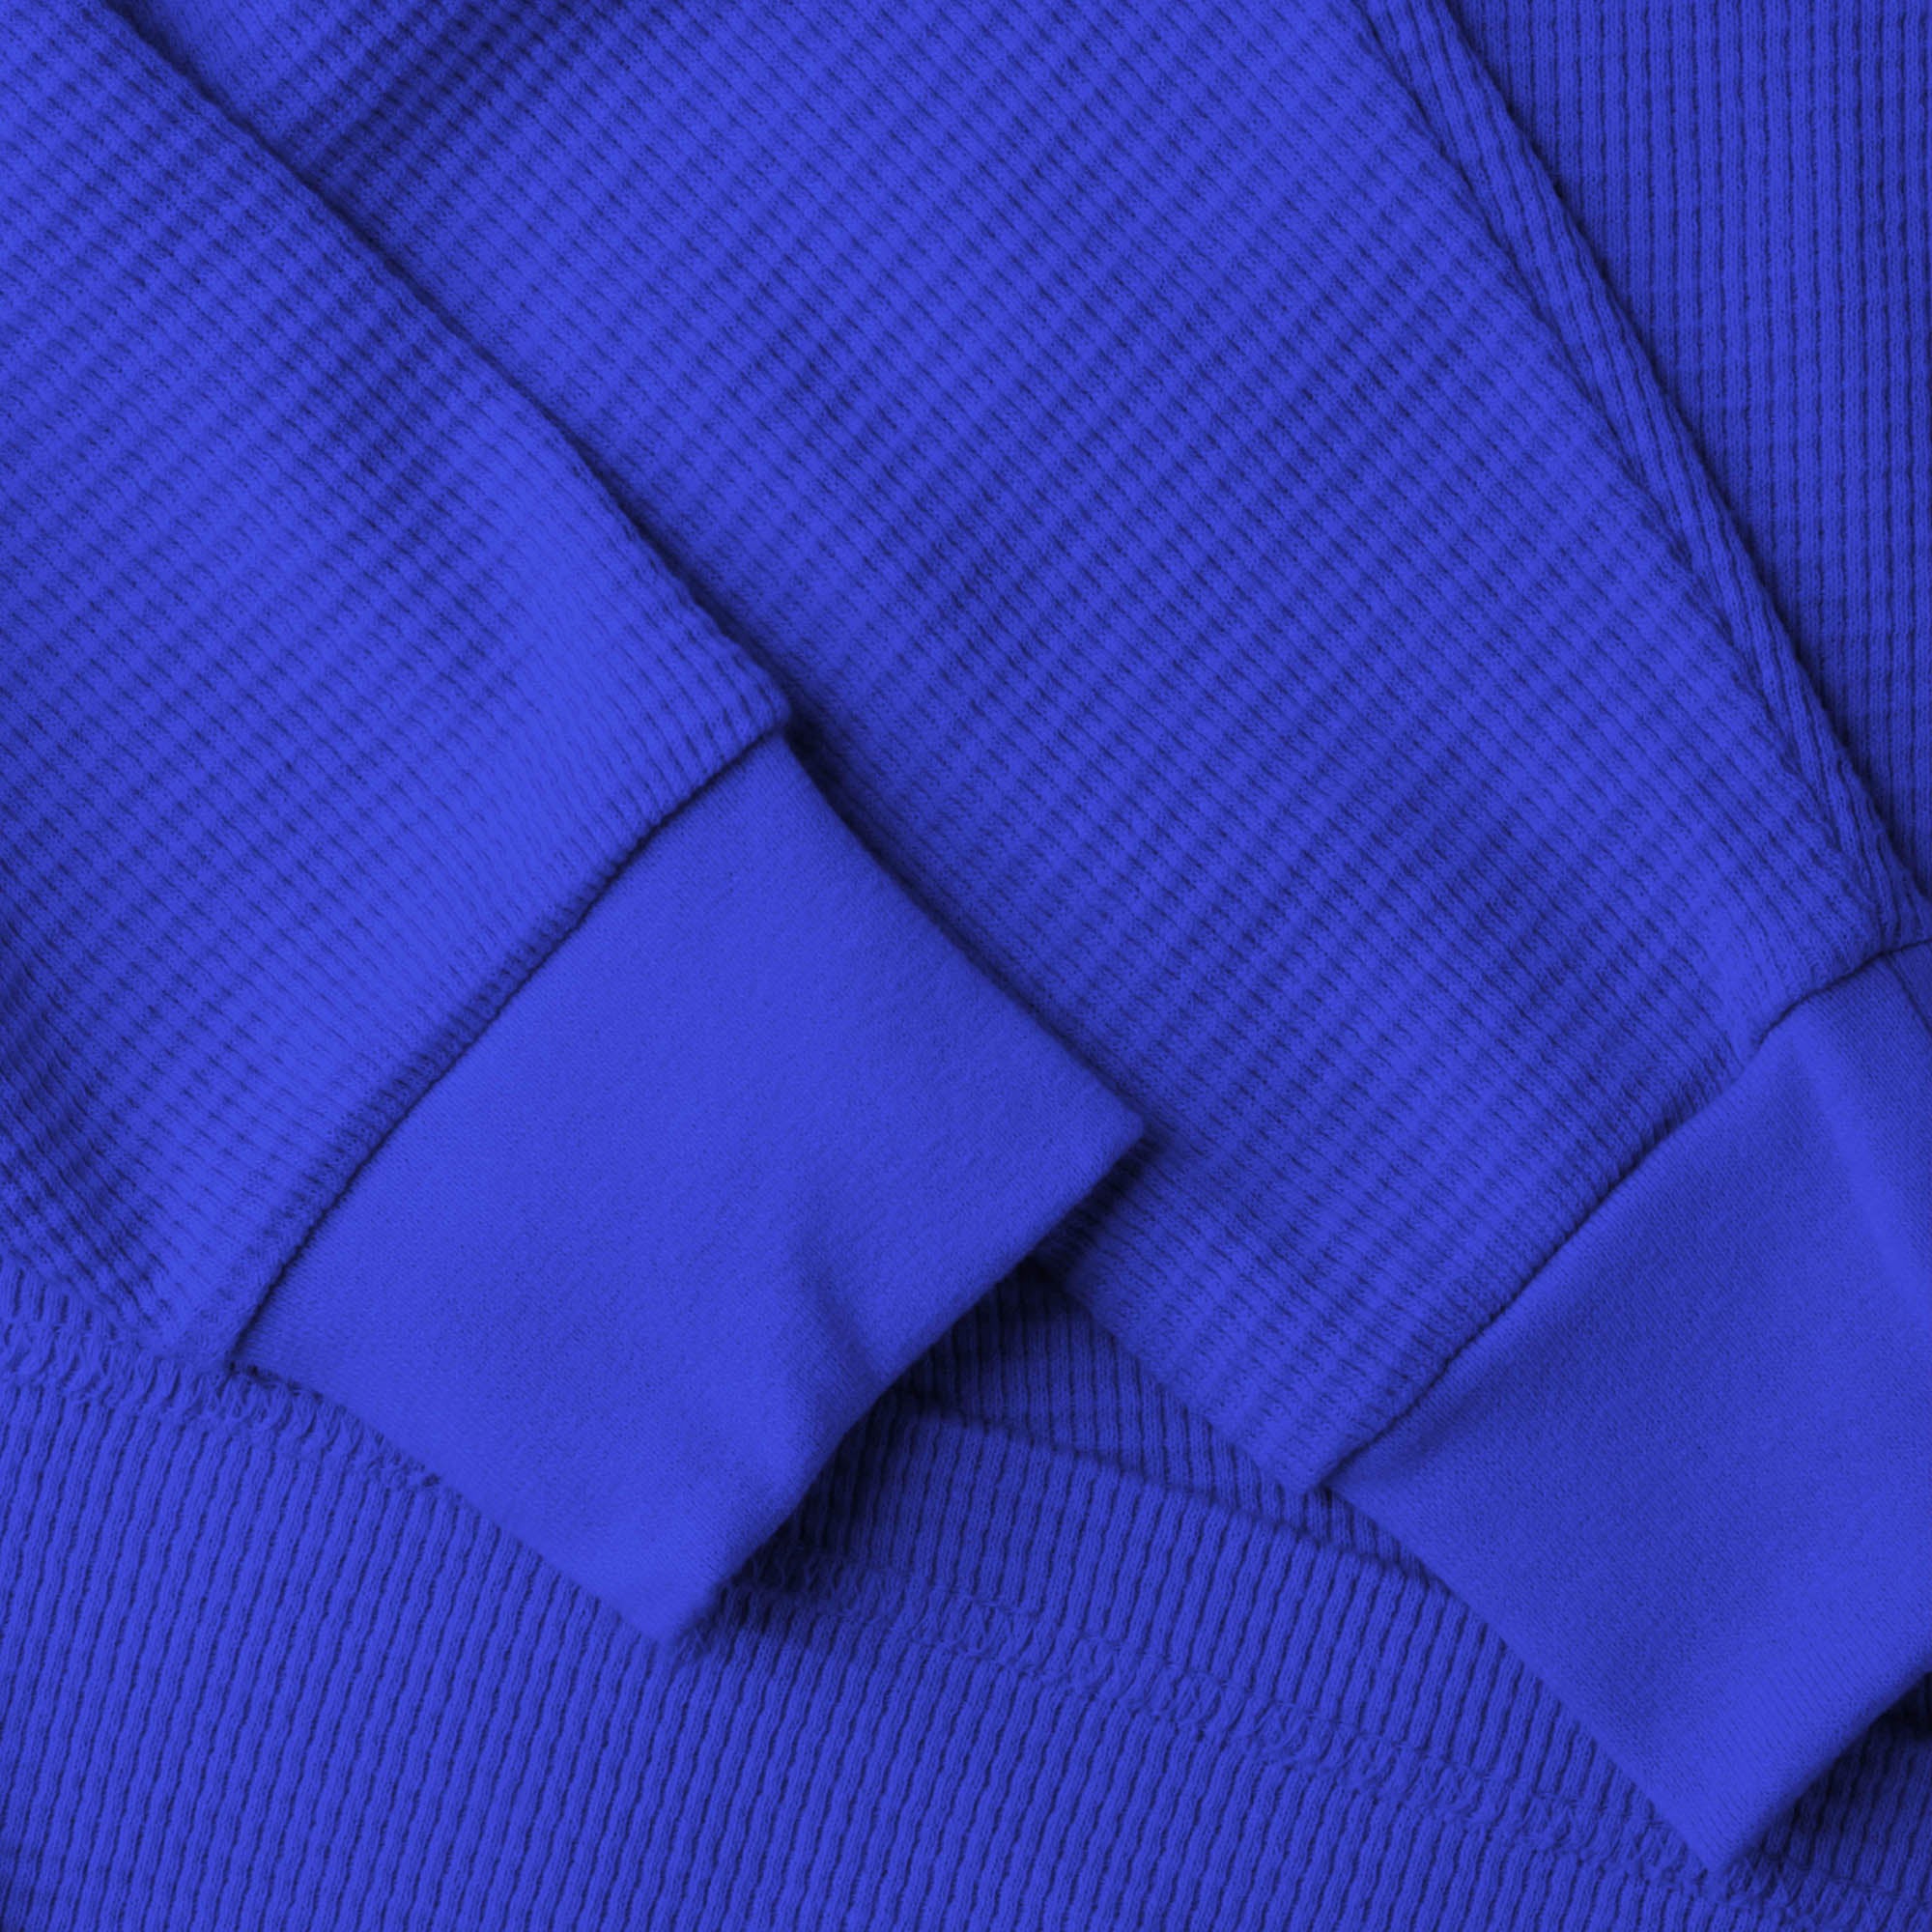 thermal shirt_thermal long sleeve_mens thermal shirt_long sleeve thermal shirts_mens thermal long sleeve_thermal clothing mens_Blue